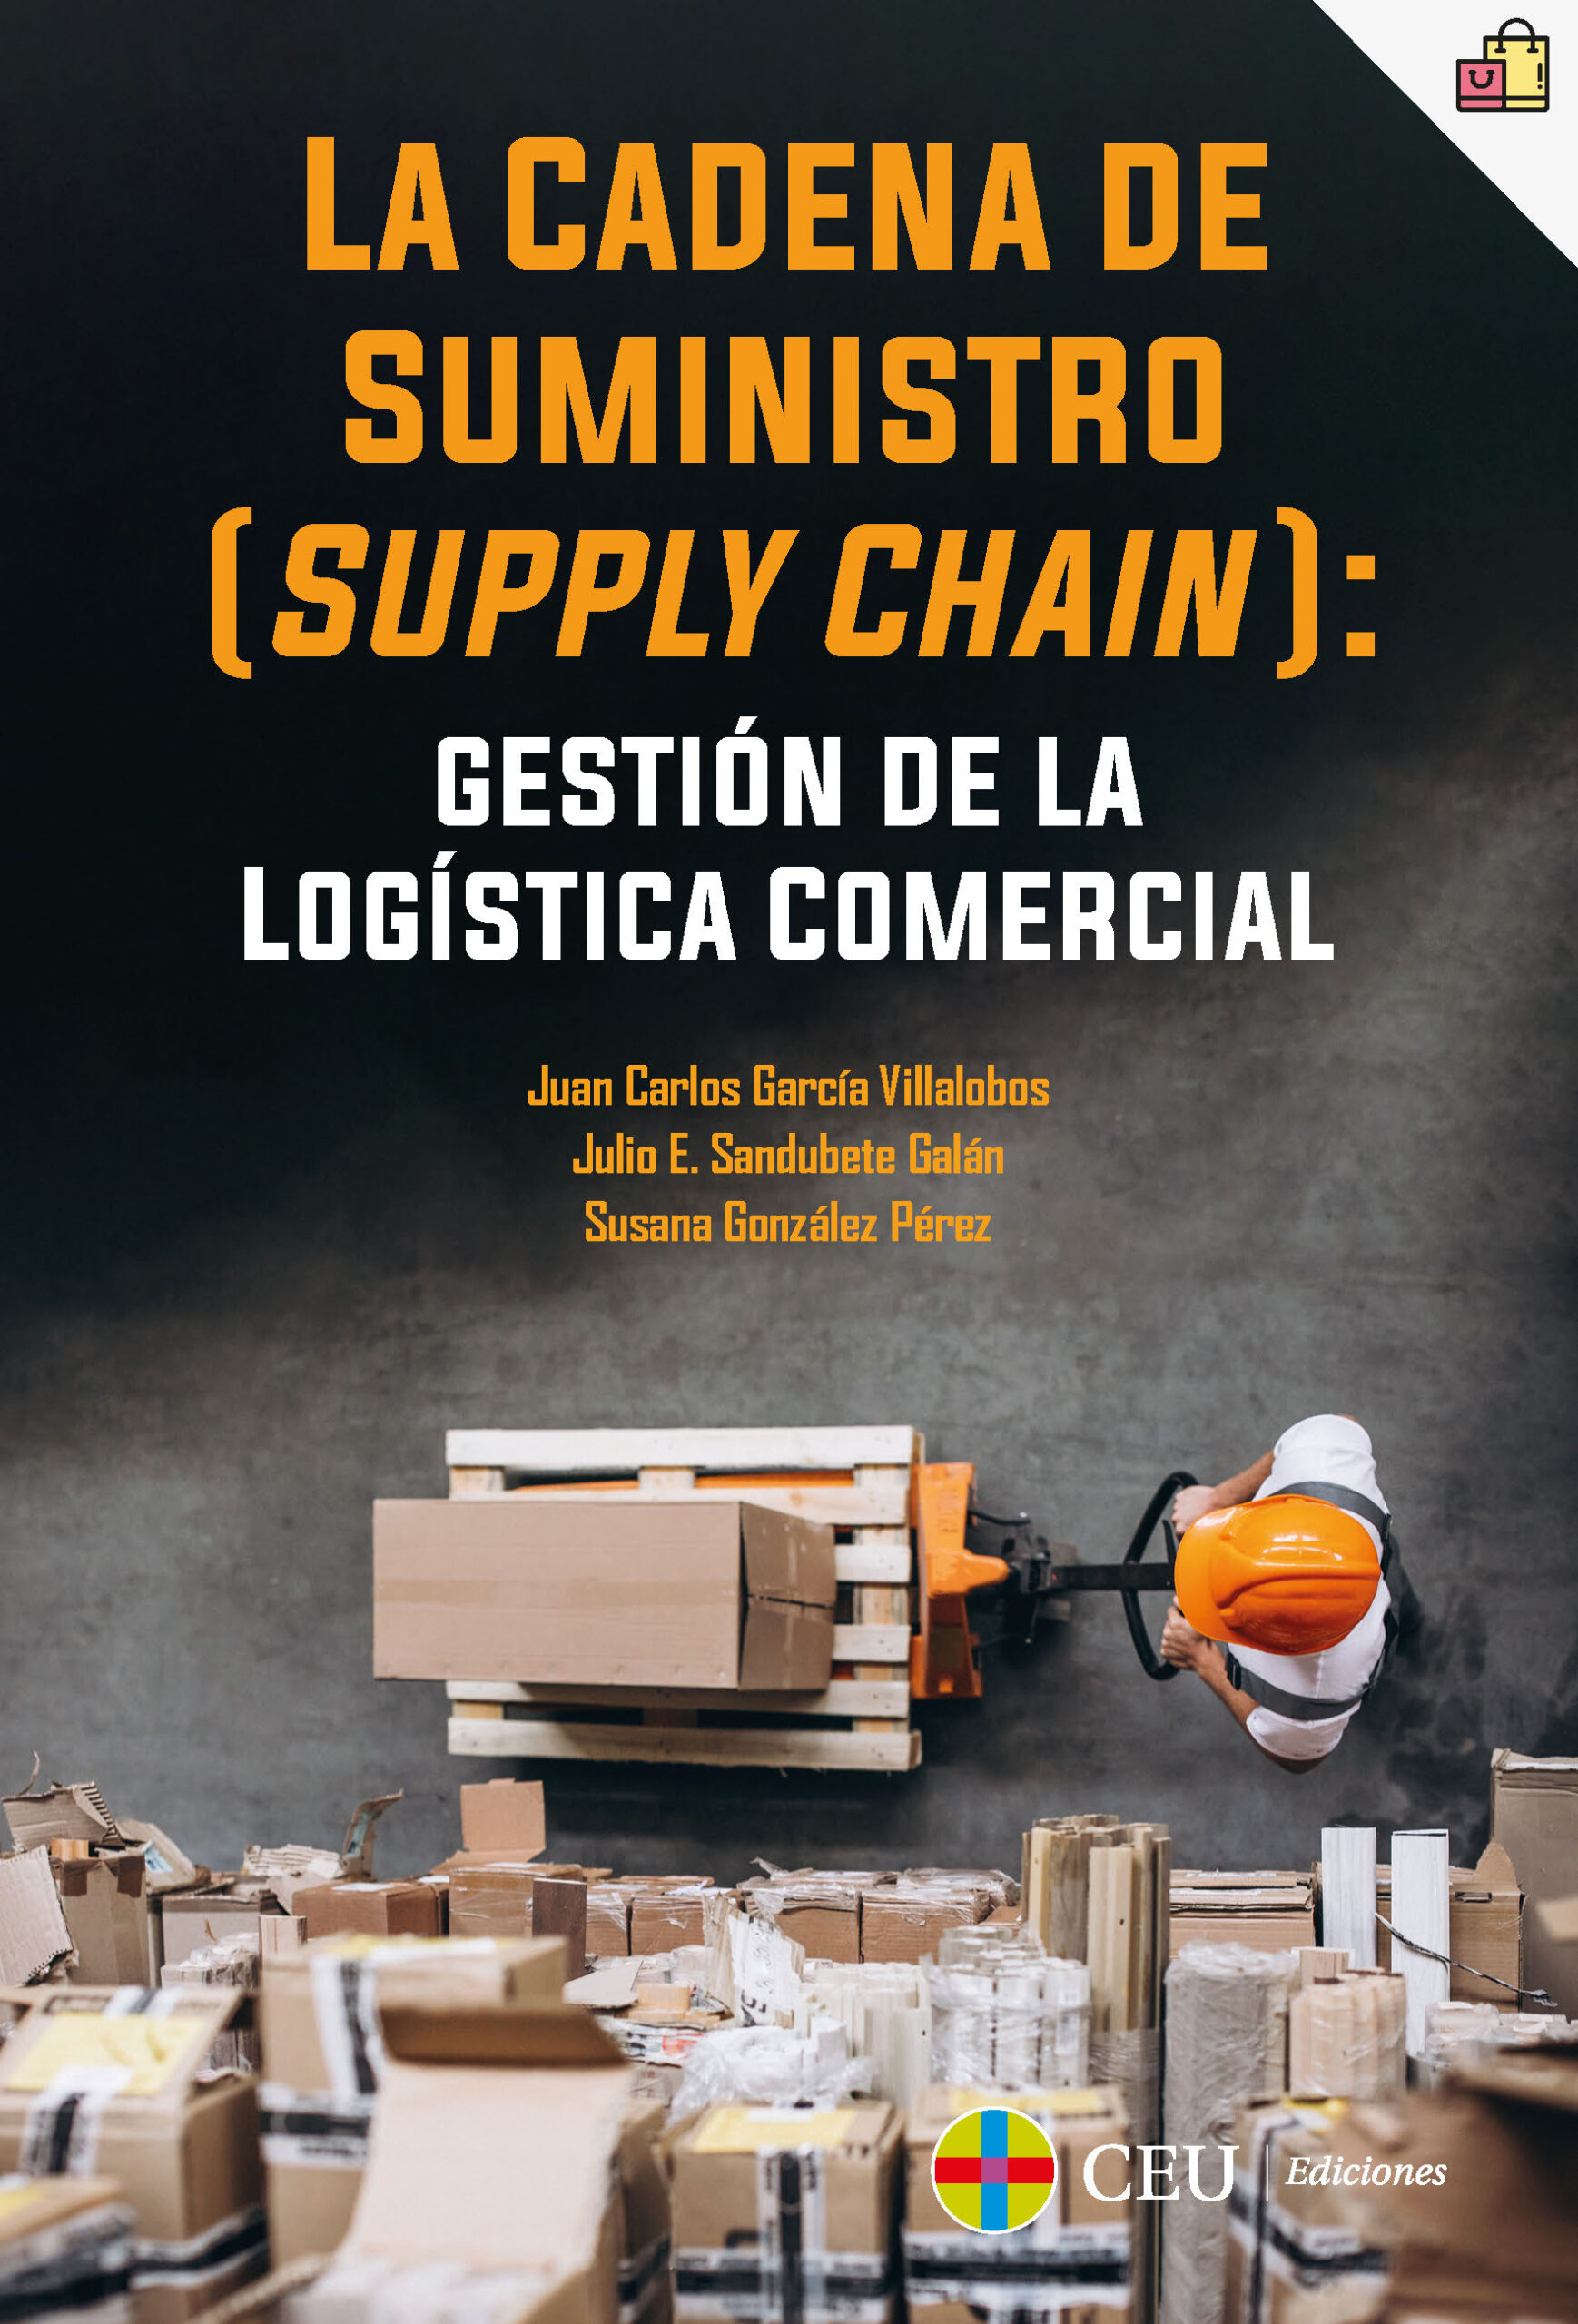 La cadena de suministro (supply chain): gestión de logística - CEU Ediciones